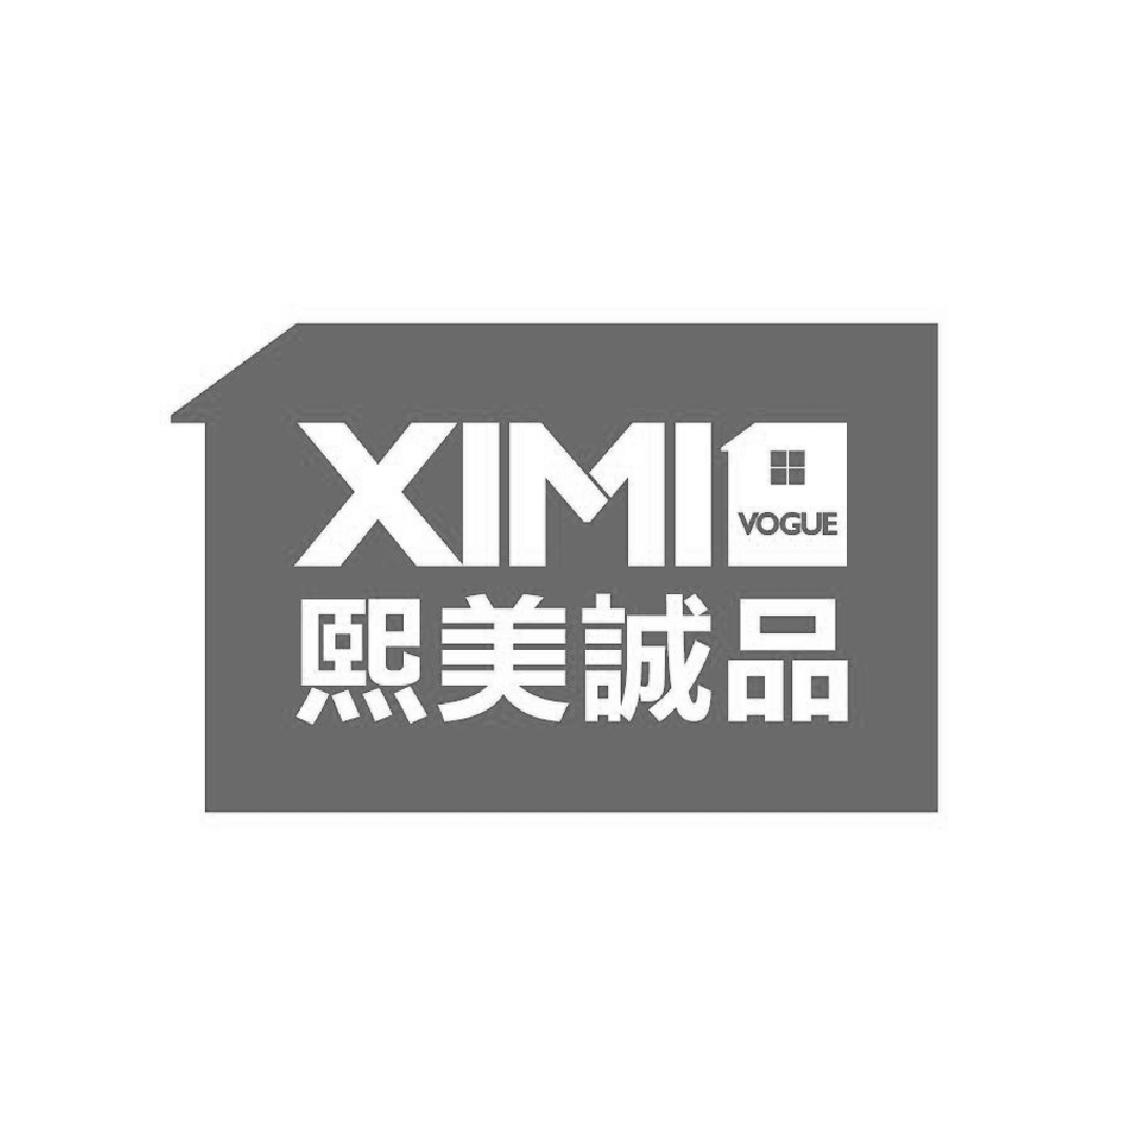 熙美诚品 ximi vogue商标公告信息,商标公告第3类-路标网